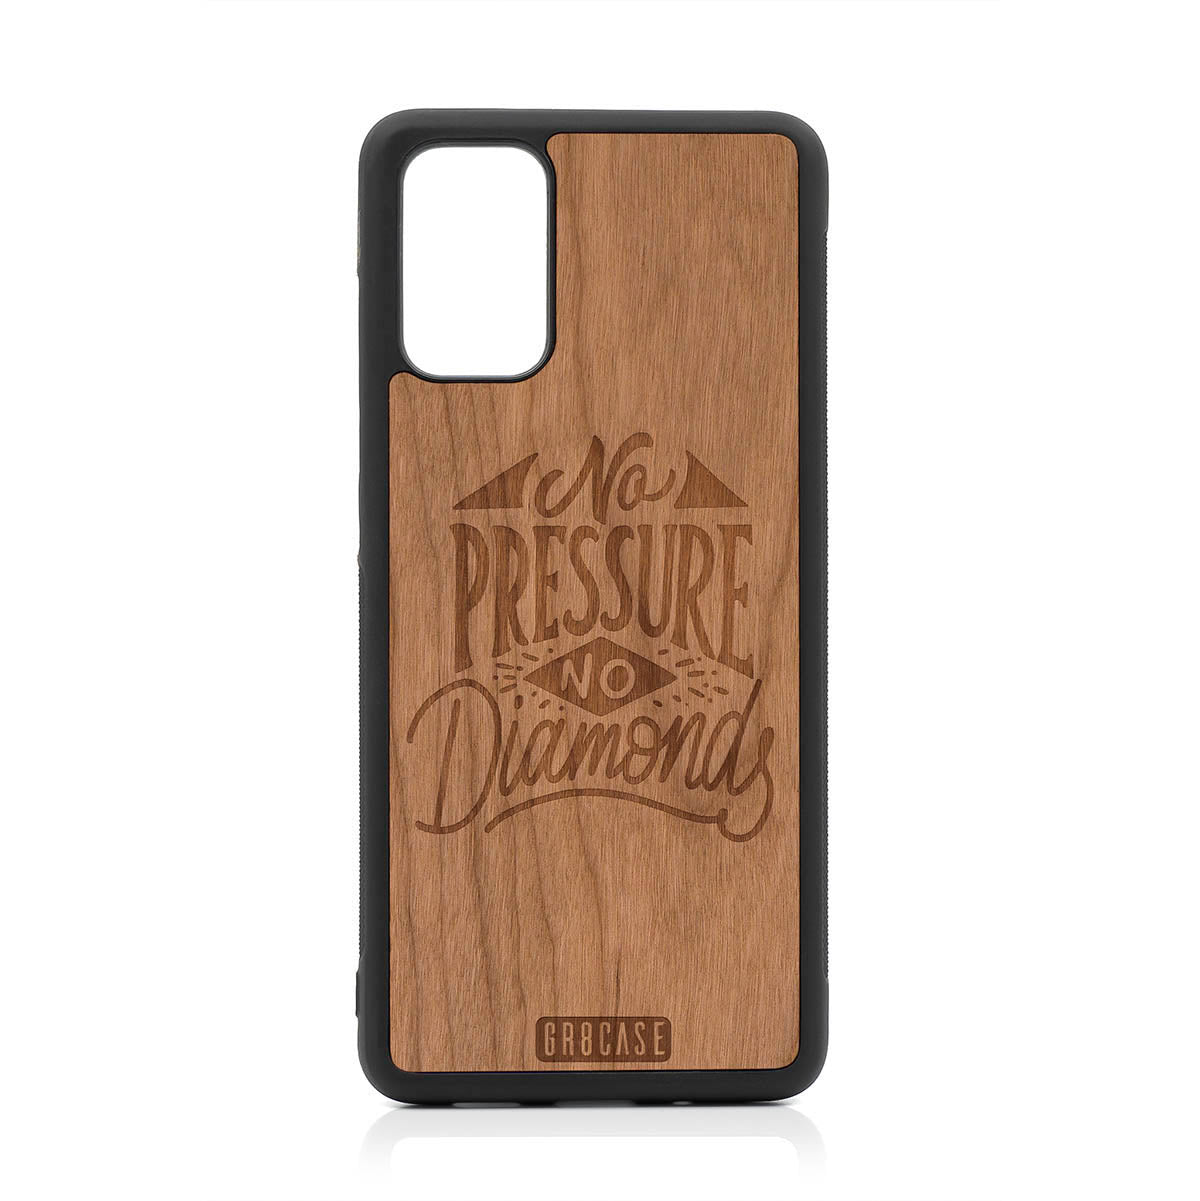 No Pressure No Diamonds Design Wood Case For Samsung Galaxy S20 Plus